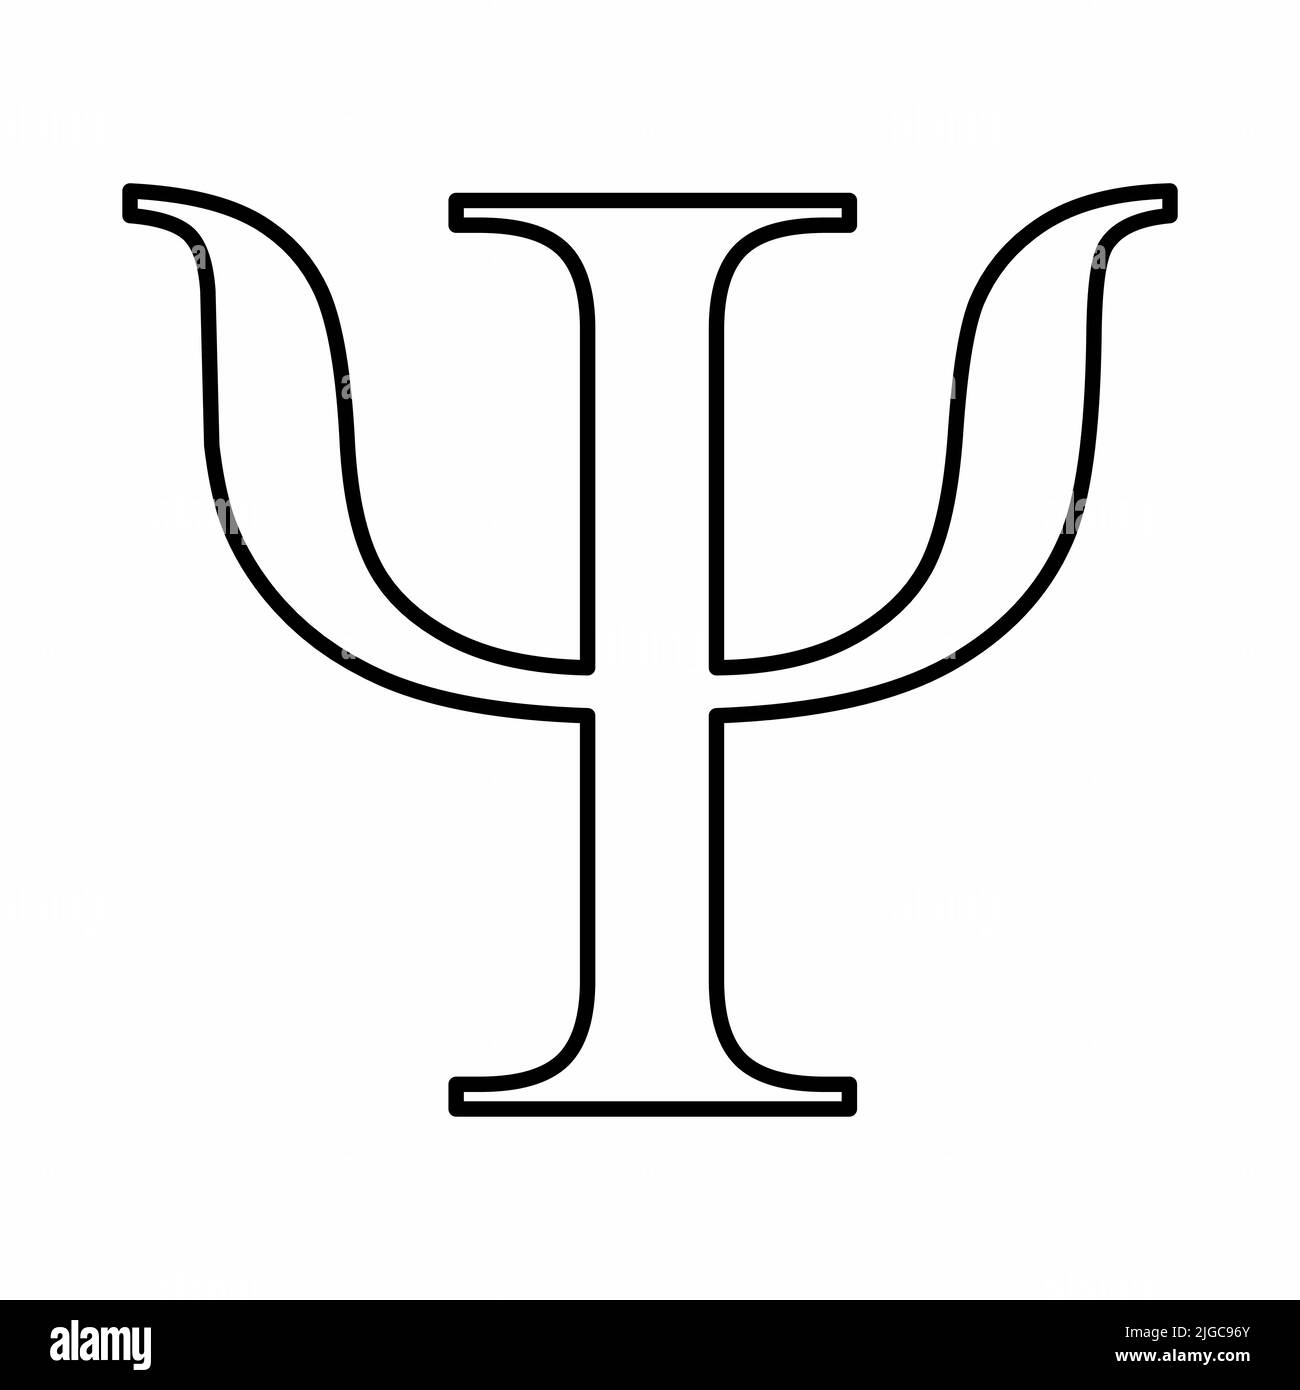 Psi signe grec. Contours noirs sur fond blanc. Illustration de Vecteur